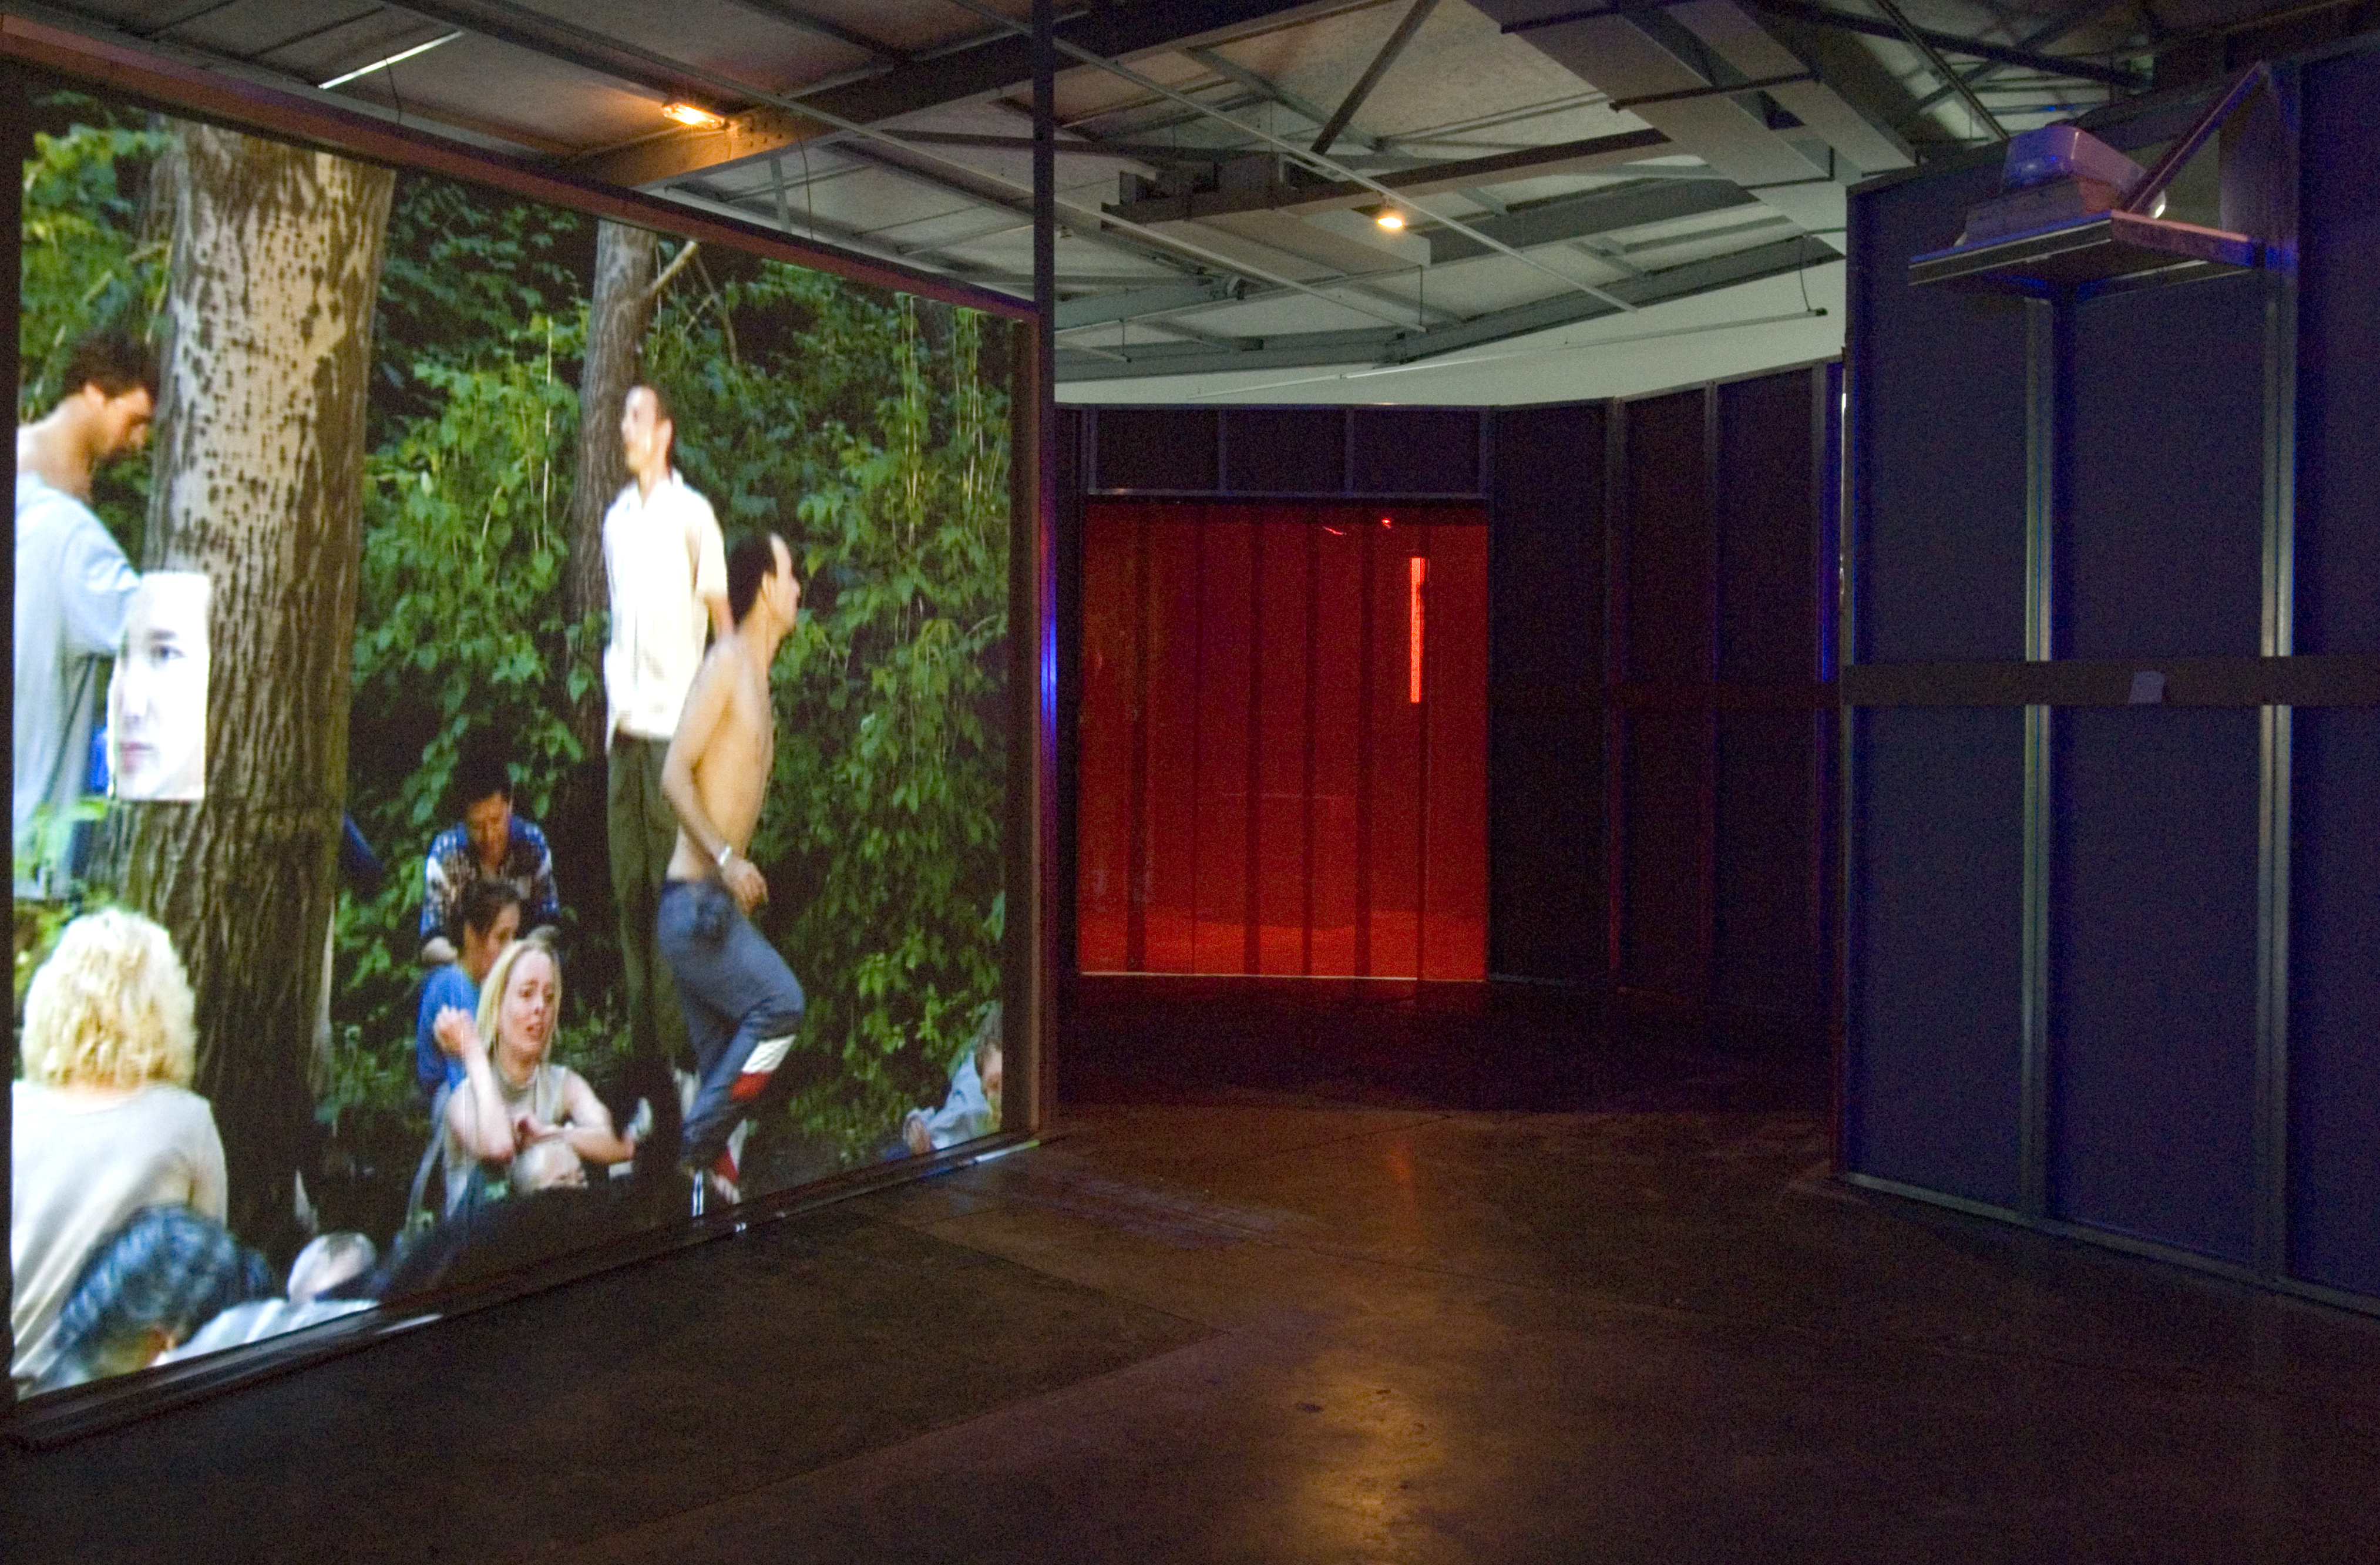 Vue de l'exposition Une vision du monde, la collection Jean-Conrad et Isabelle Lemaître © Marc Domage / la maison rouge 2006